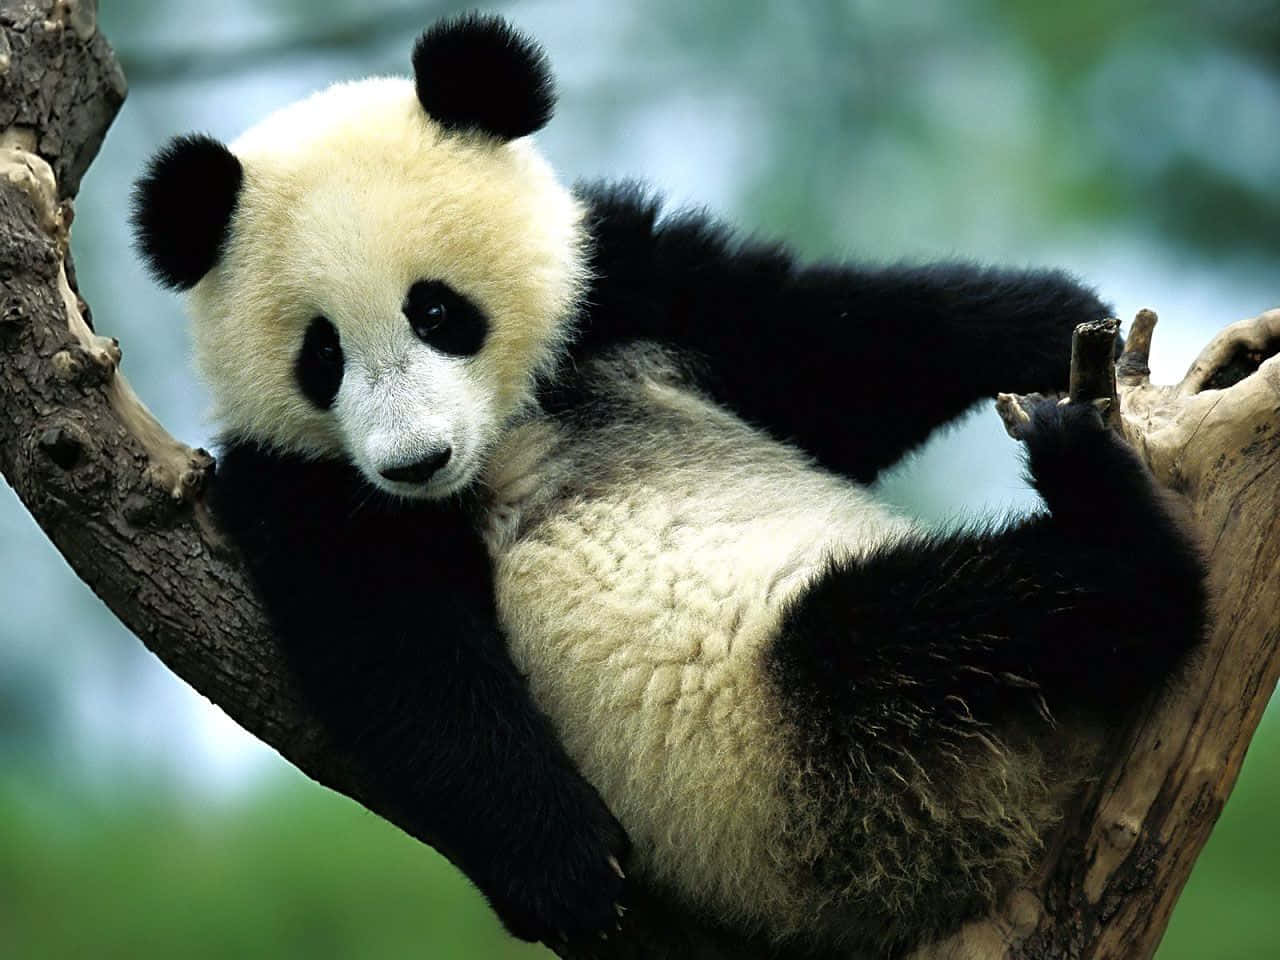 Unailustración De Un Panda Gigante En Su Hábitat Natural.